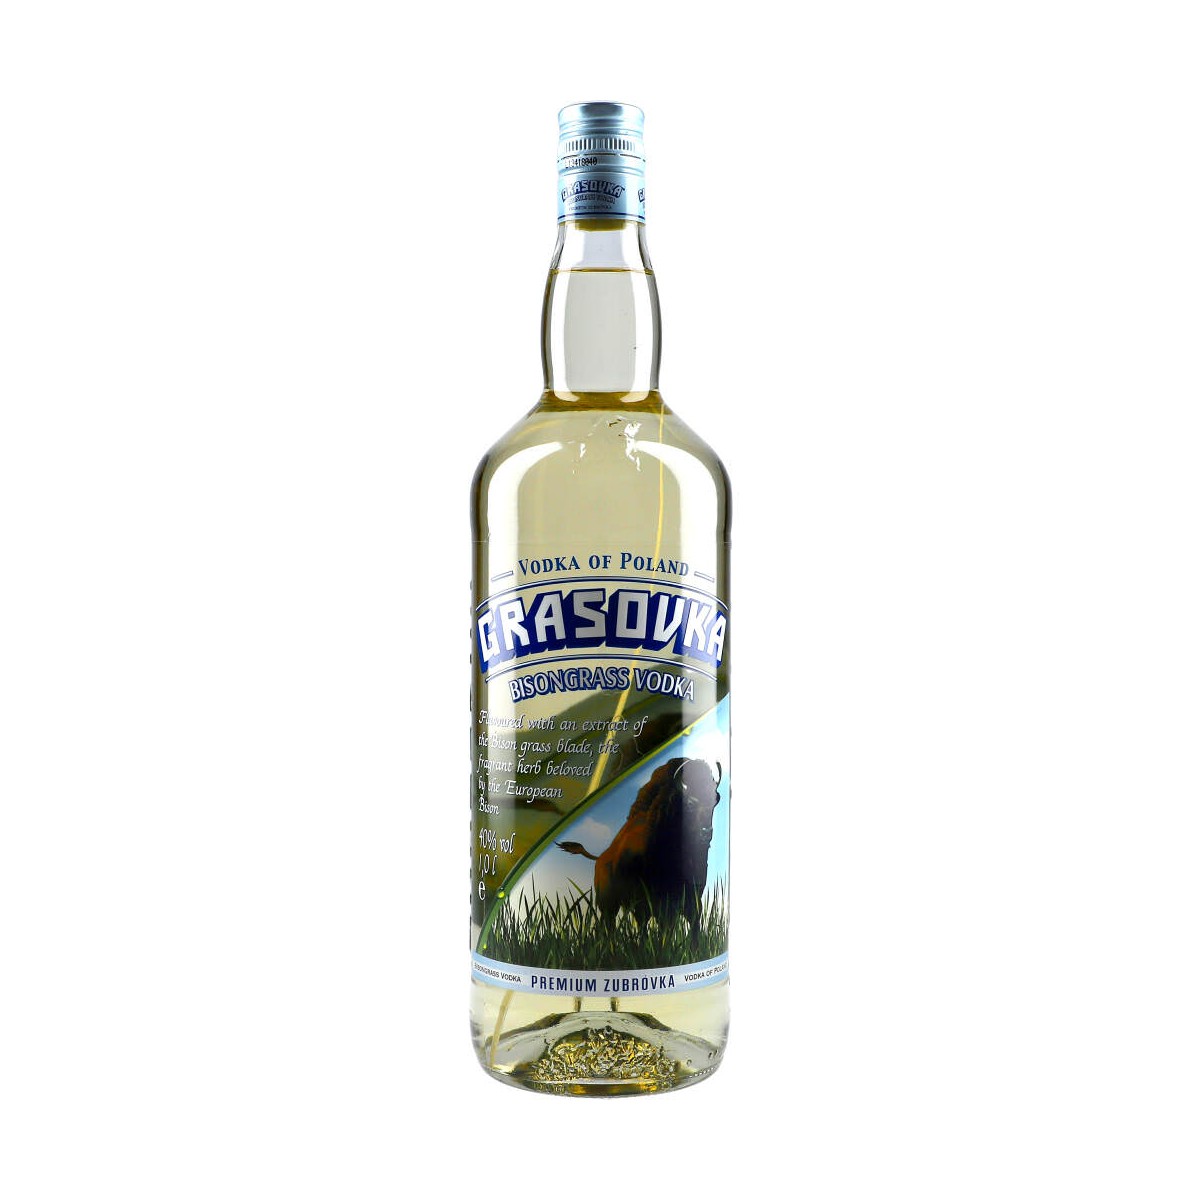 100cl 38% Bisongrass Grasovka Vodka